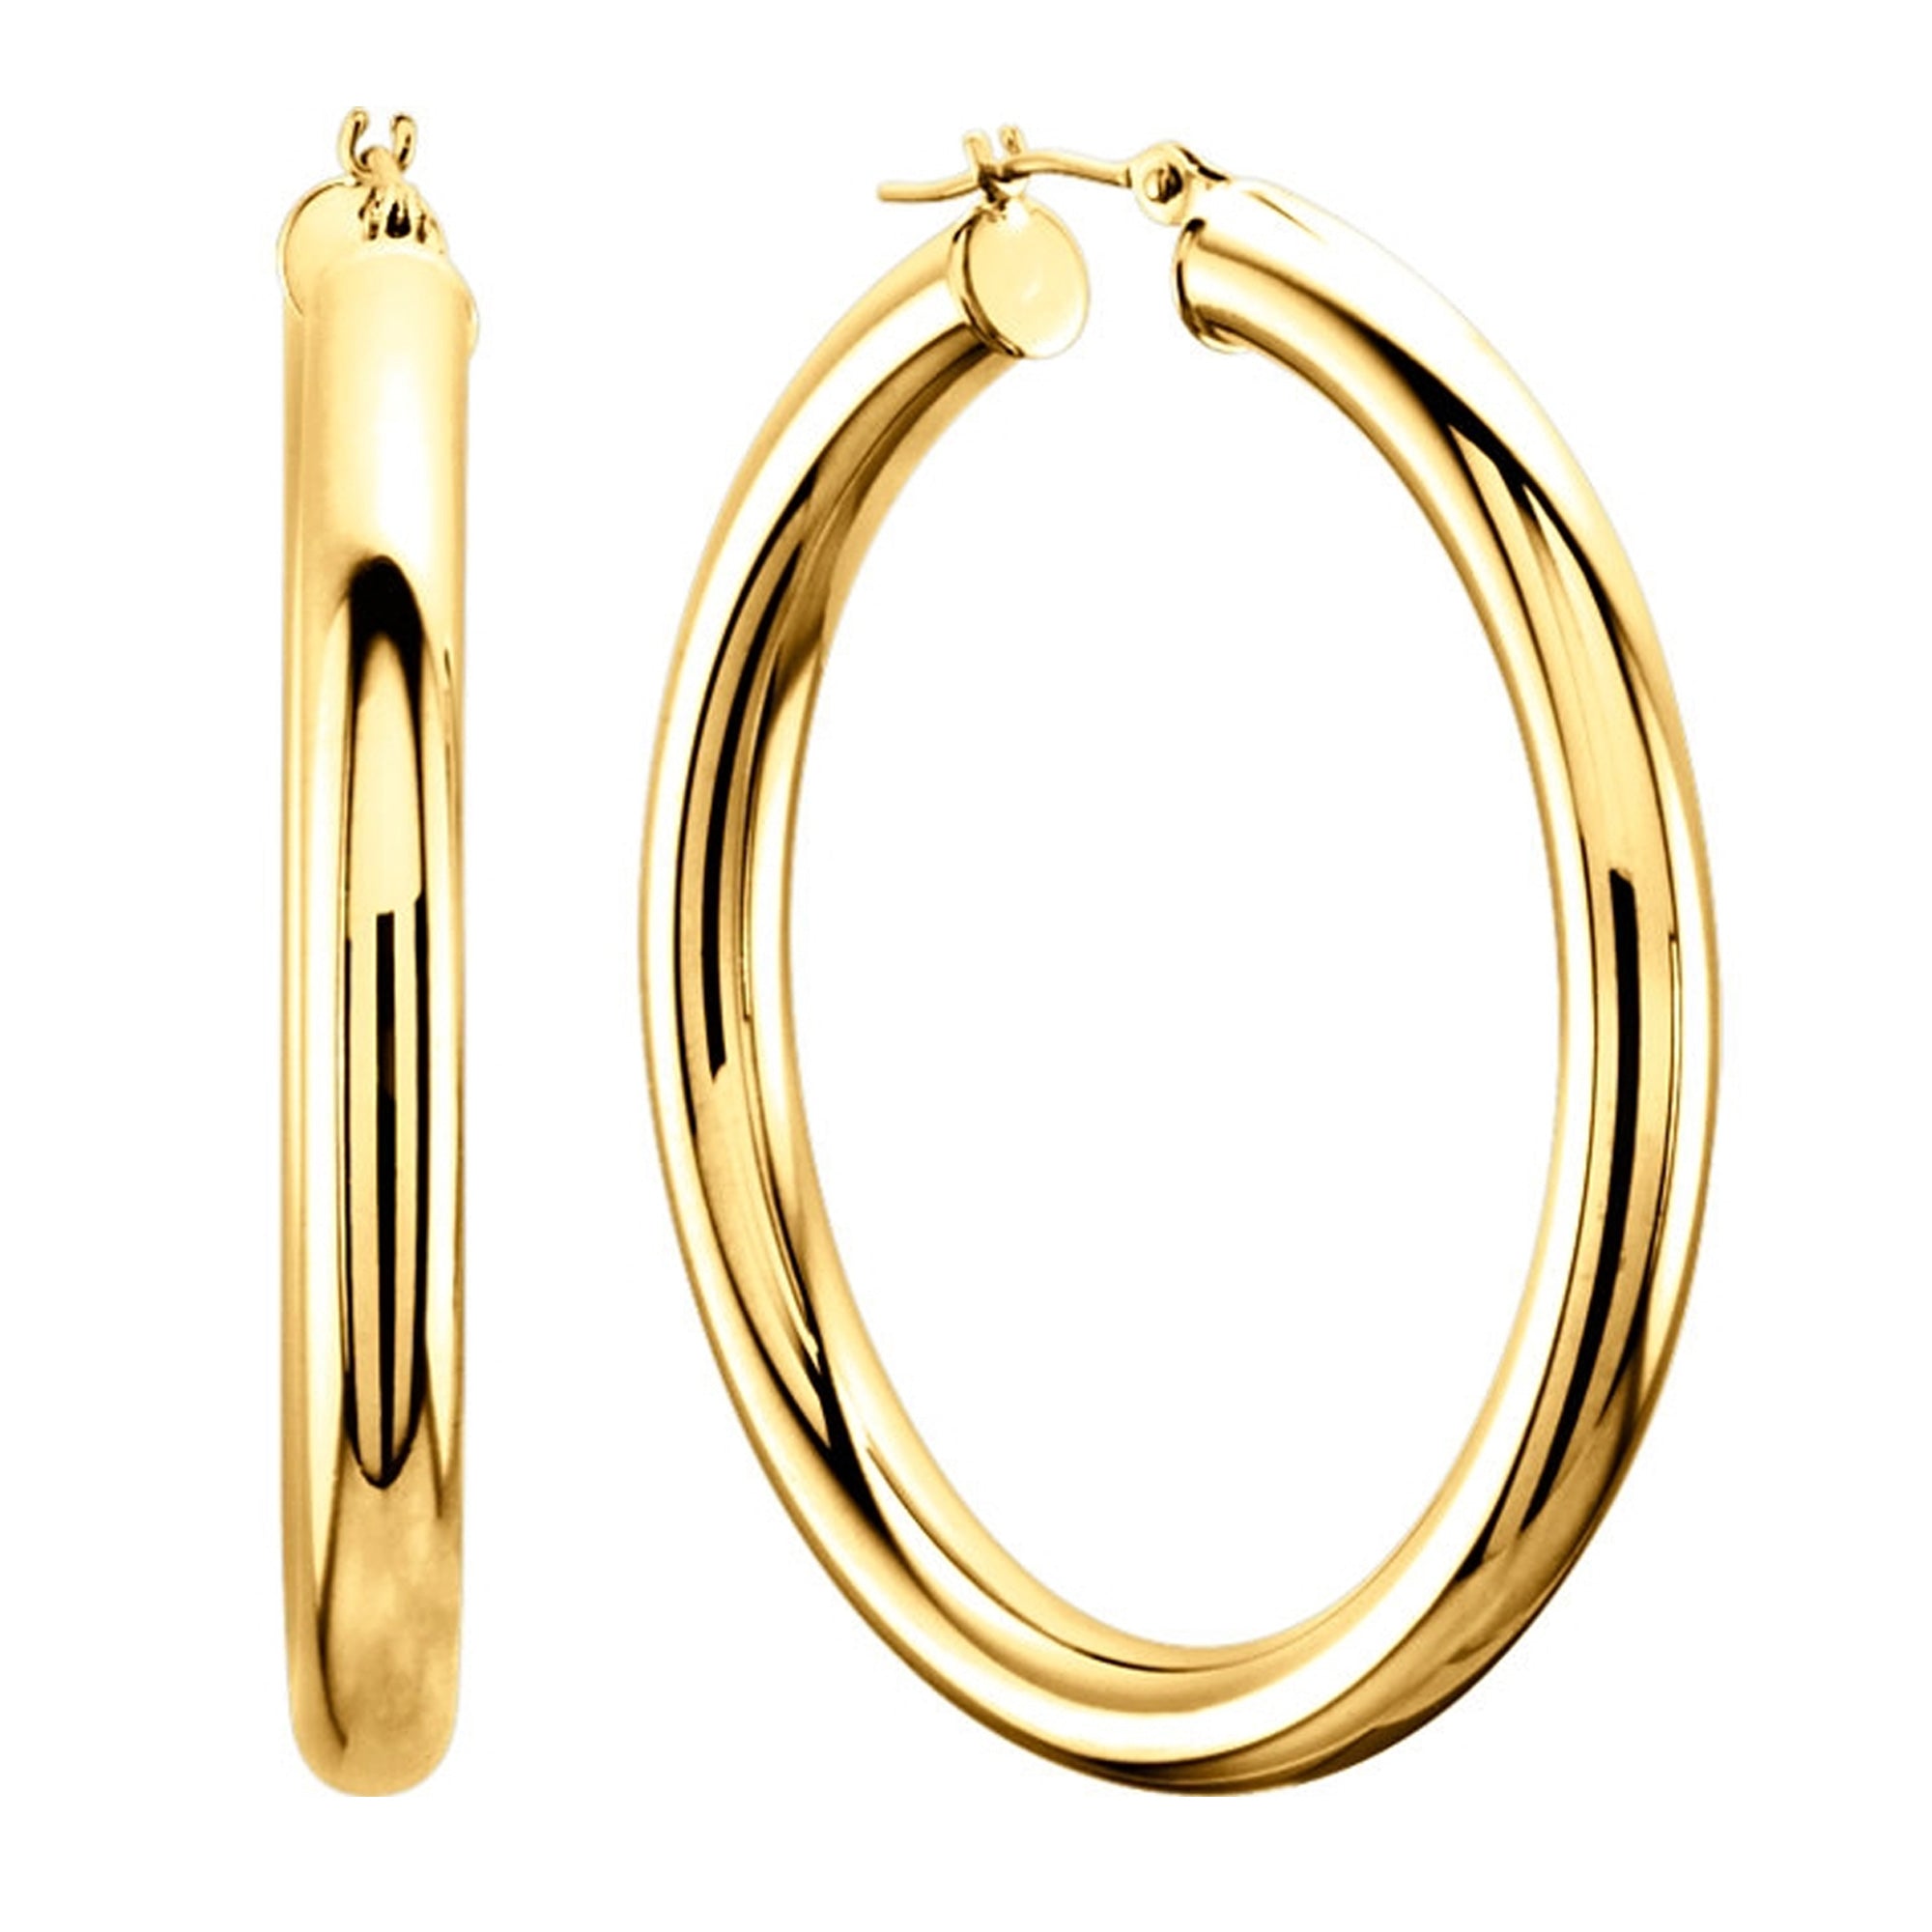 10k gult guld 3 mm glänsande runda rörbågeörhängen fina designersmycken för män och kvinnor